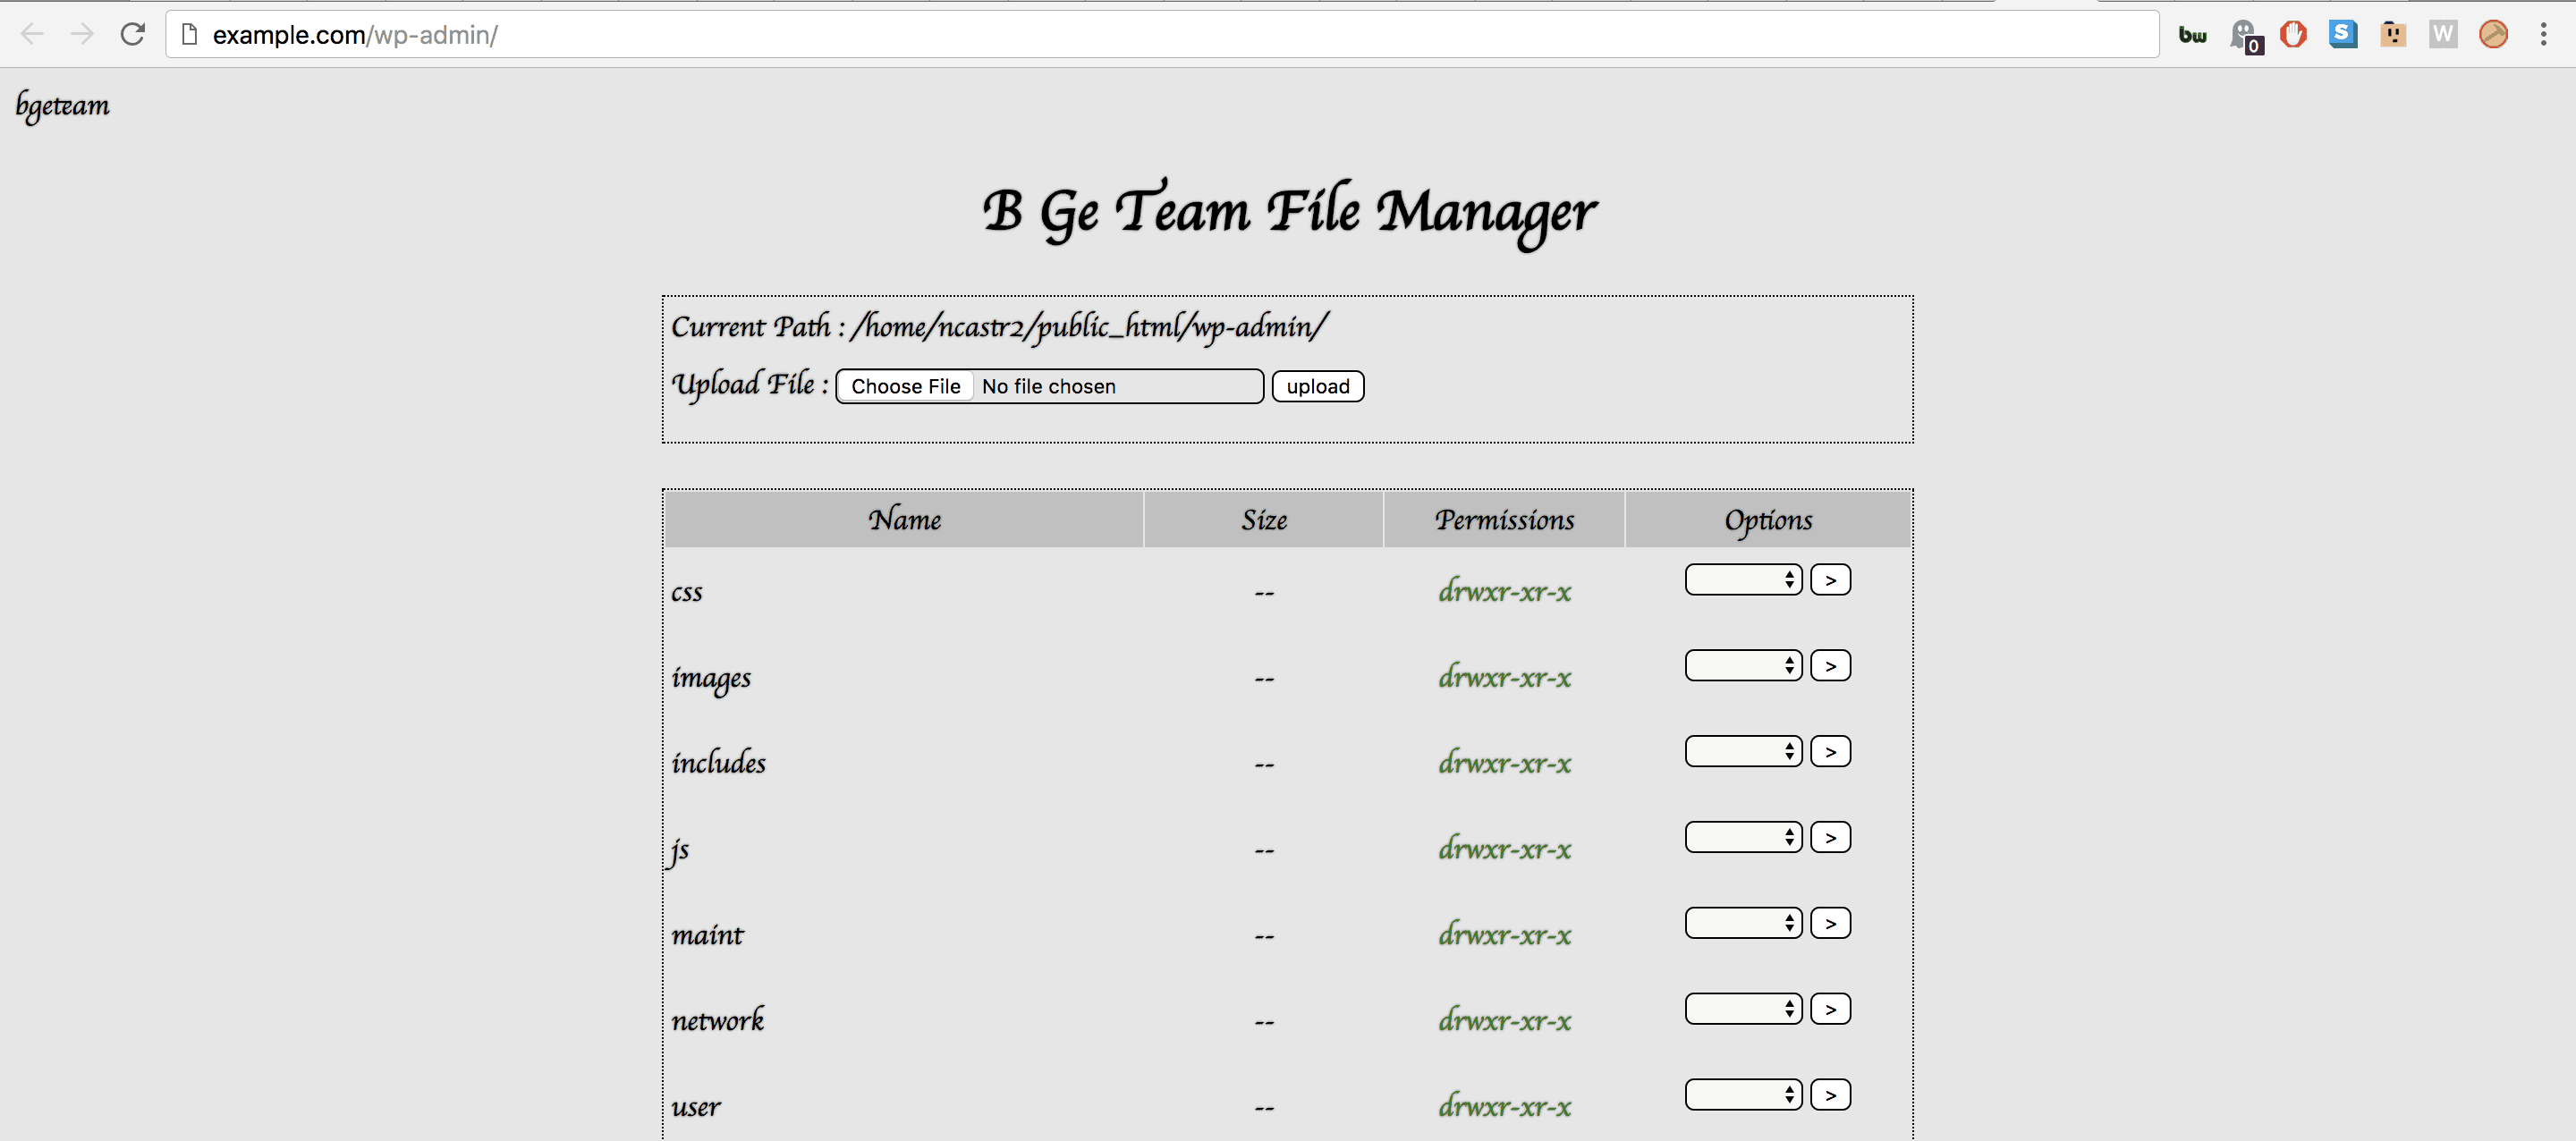 B G Team file manager WordPress hack